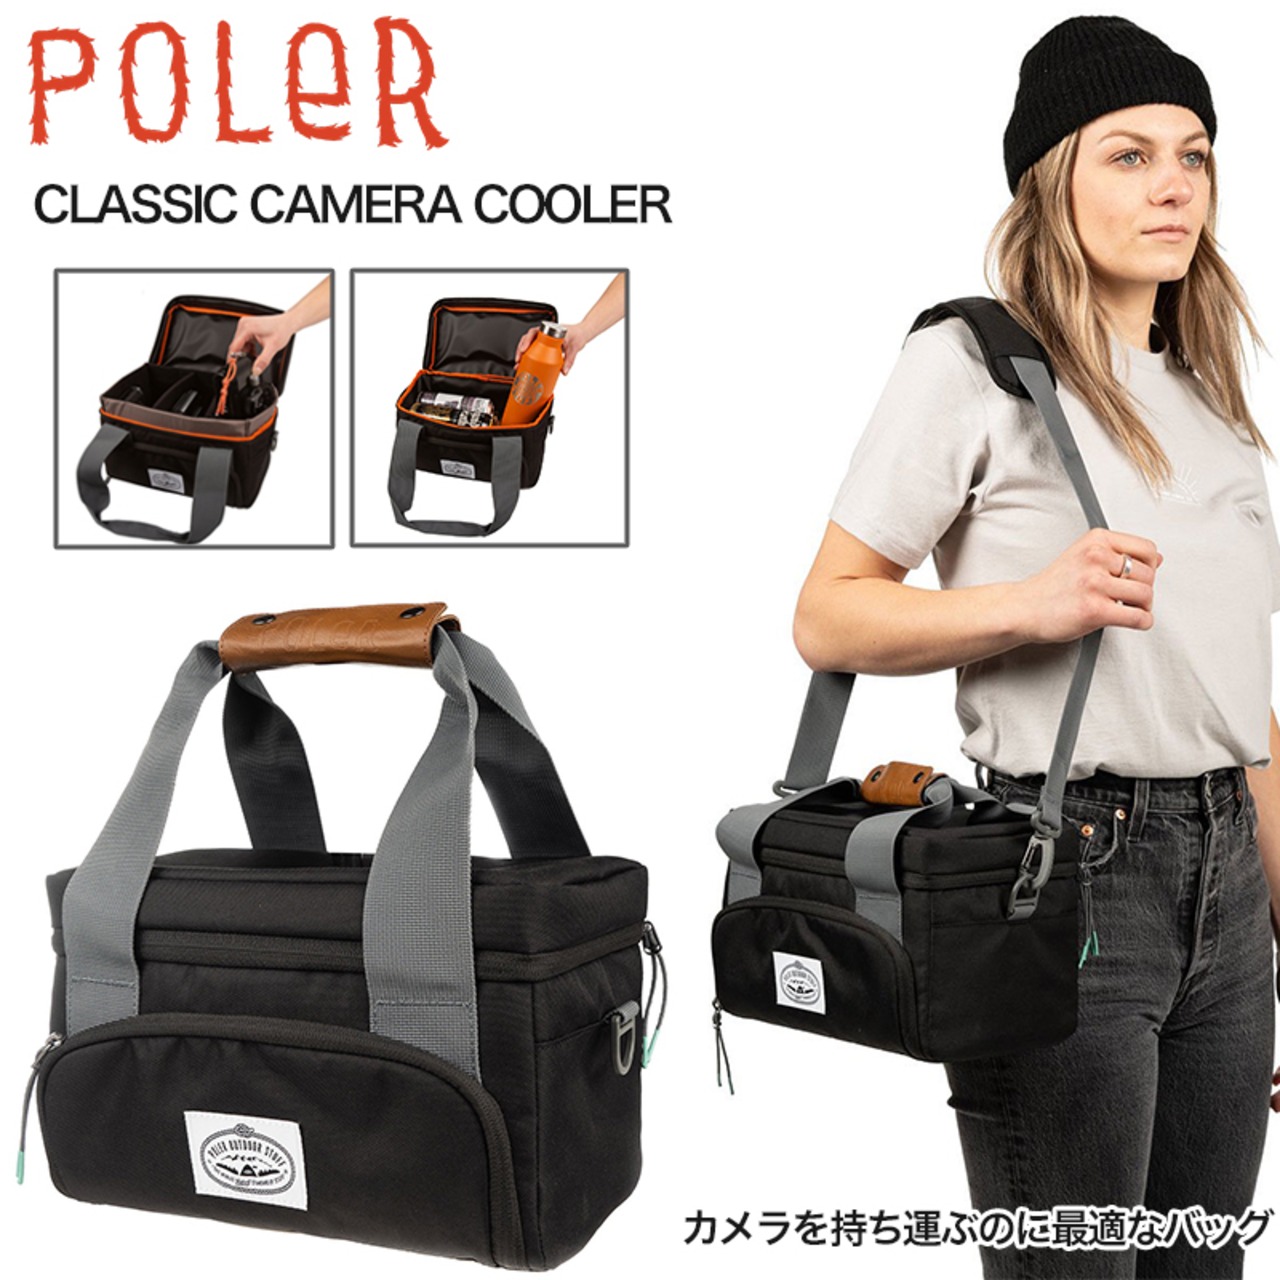 POLeR ポーラー CLASSIC CAMERA COOLER カメラバック クーラーバック バッグ ブラック